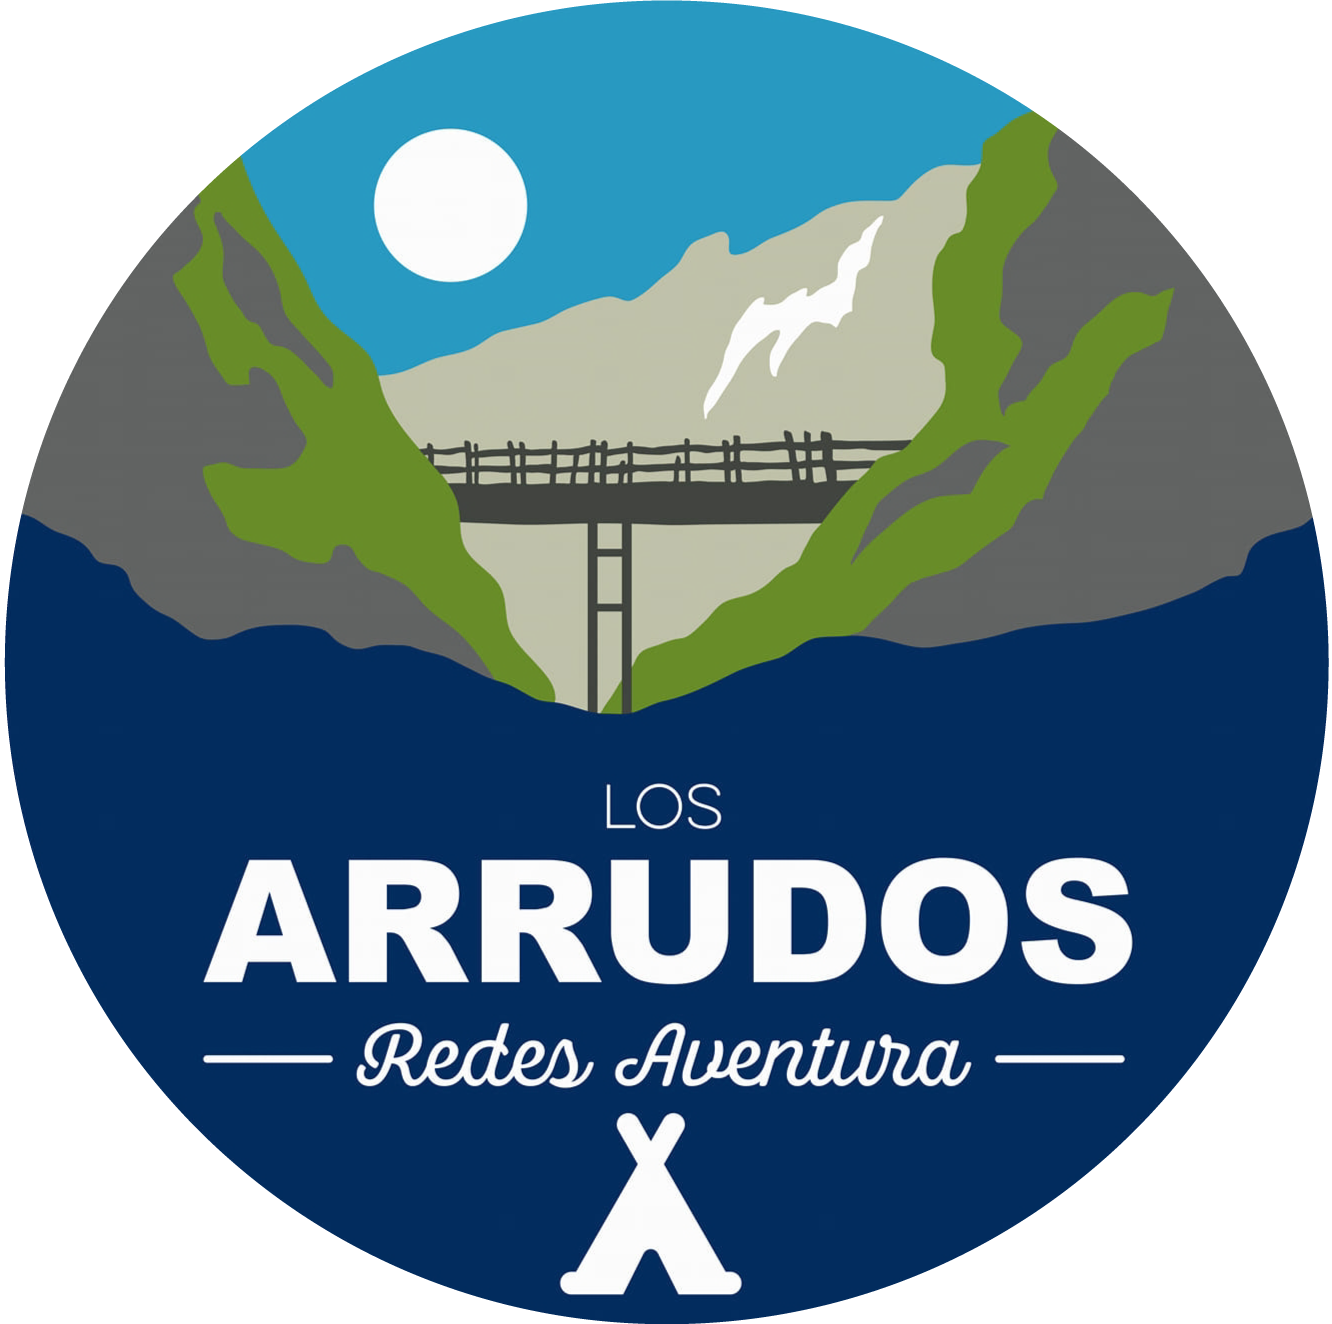 Ver detalles de la Empresa Camping Los Arrudos